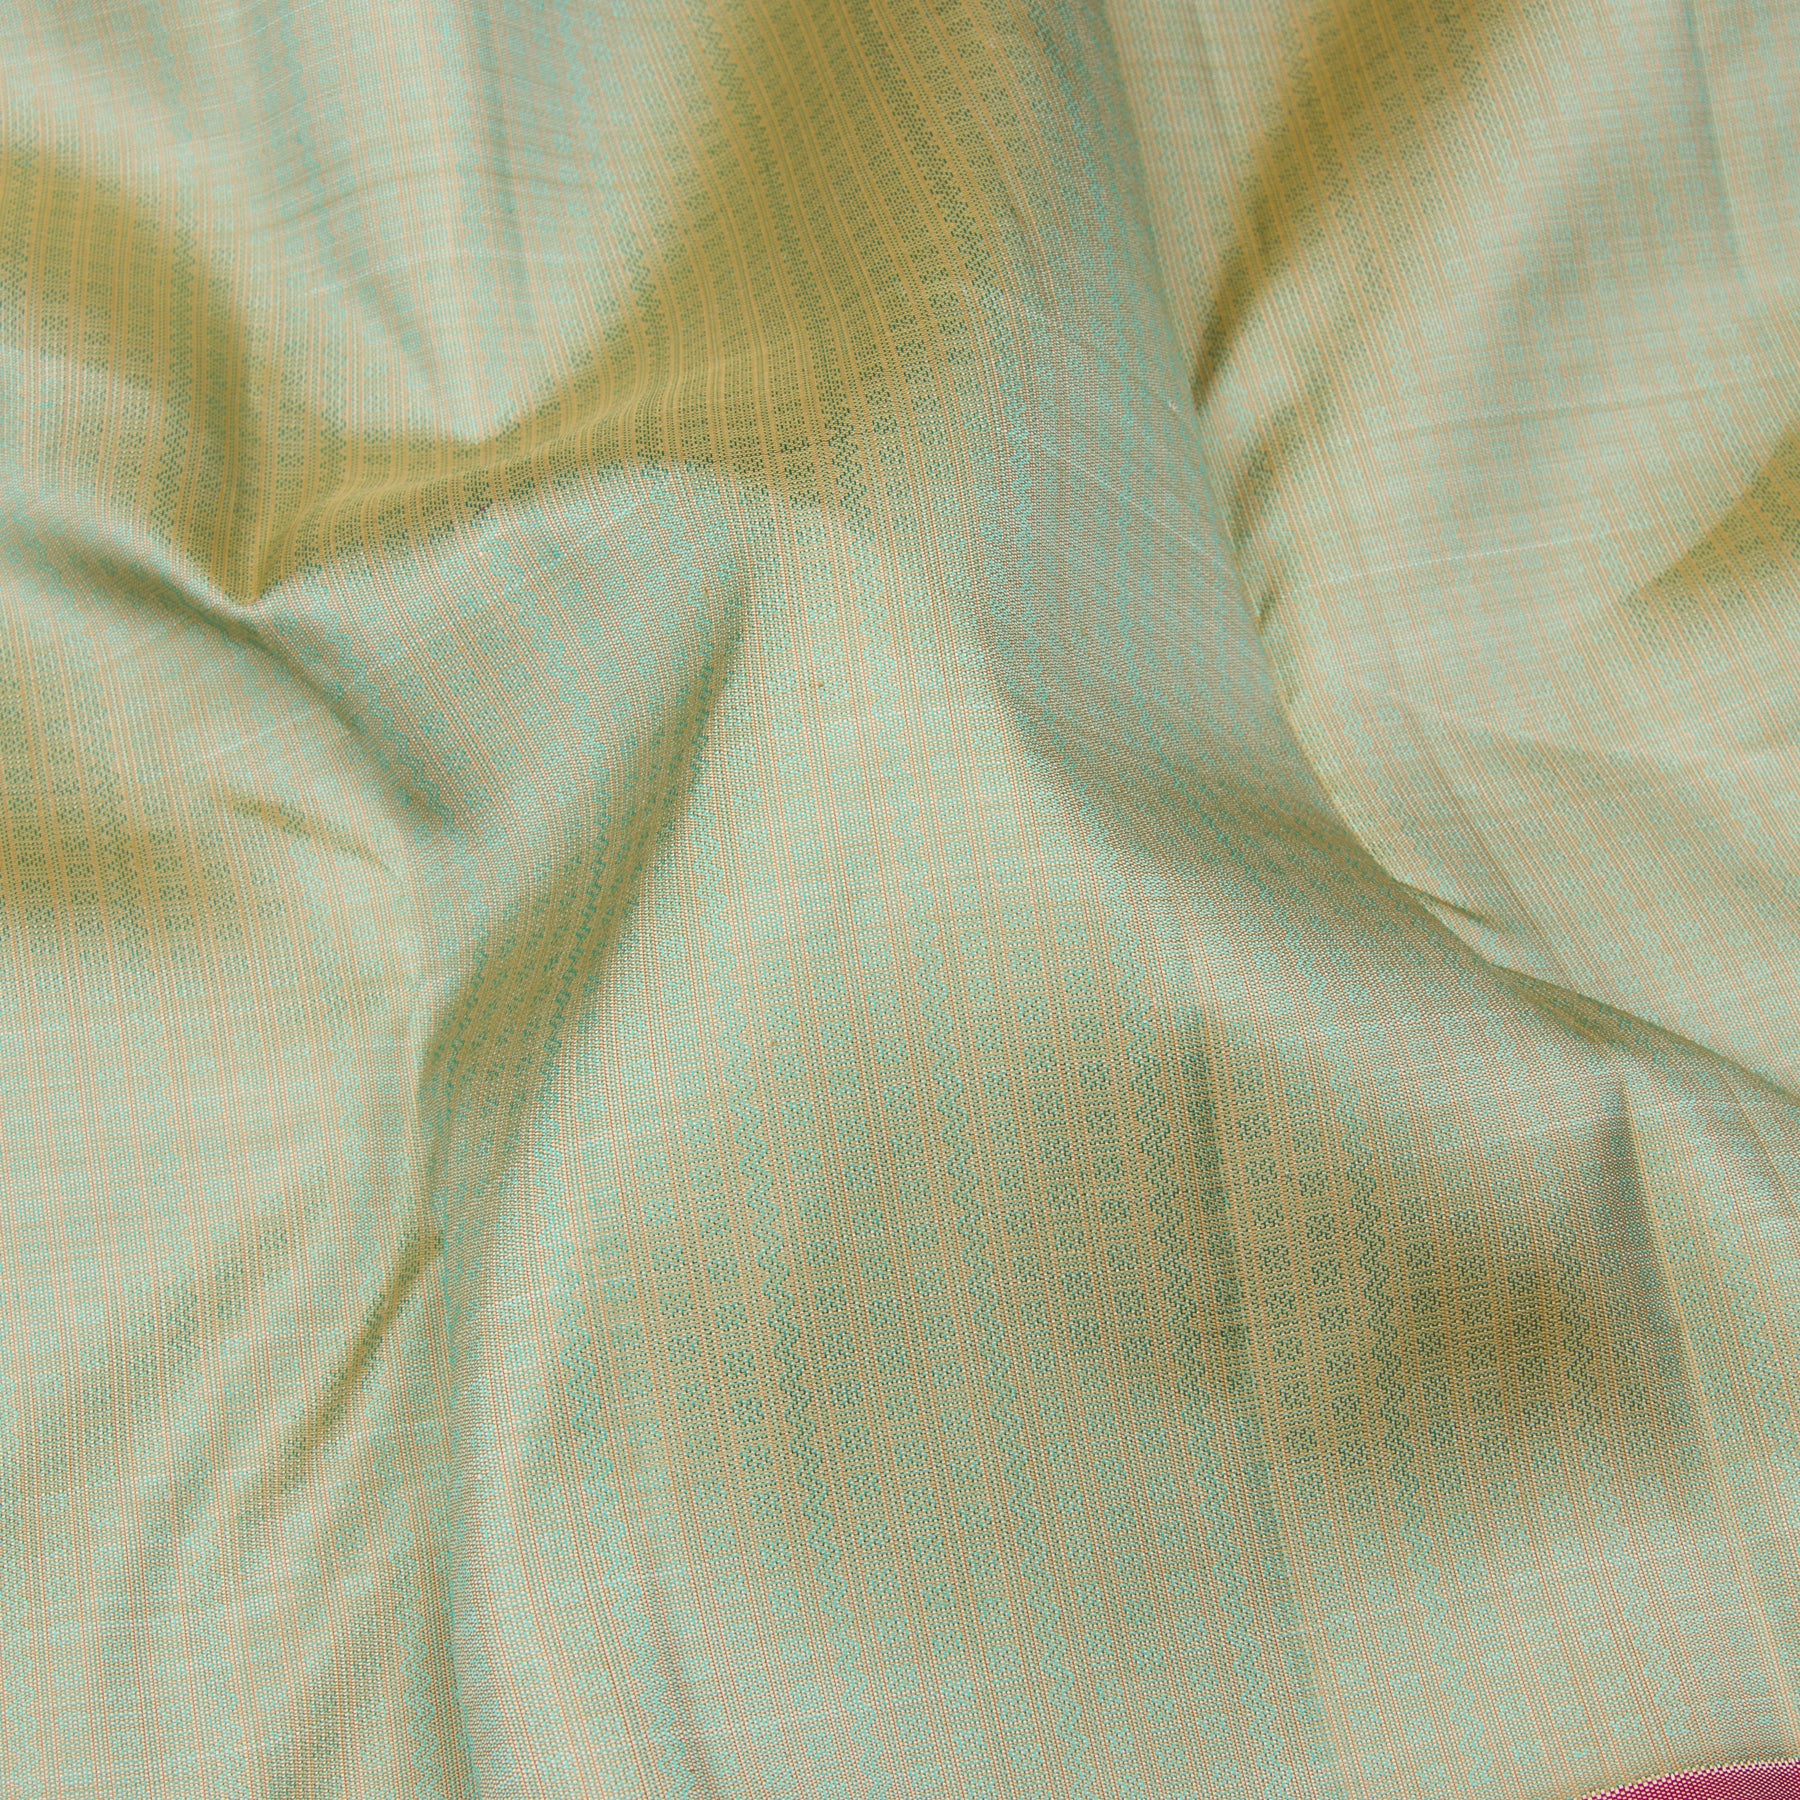 Kanakavalli Kanjivaram Silk Sari 23-110-HS001-09206 - Fabric View